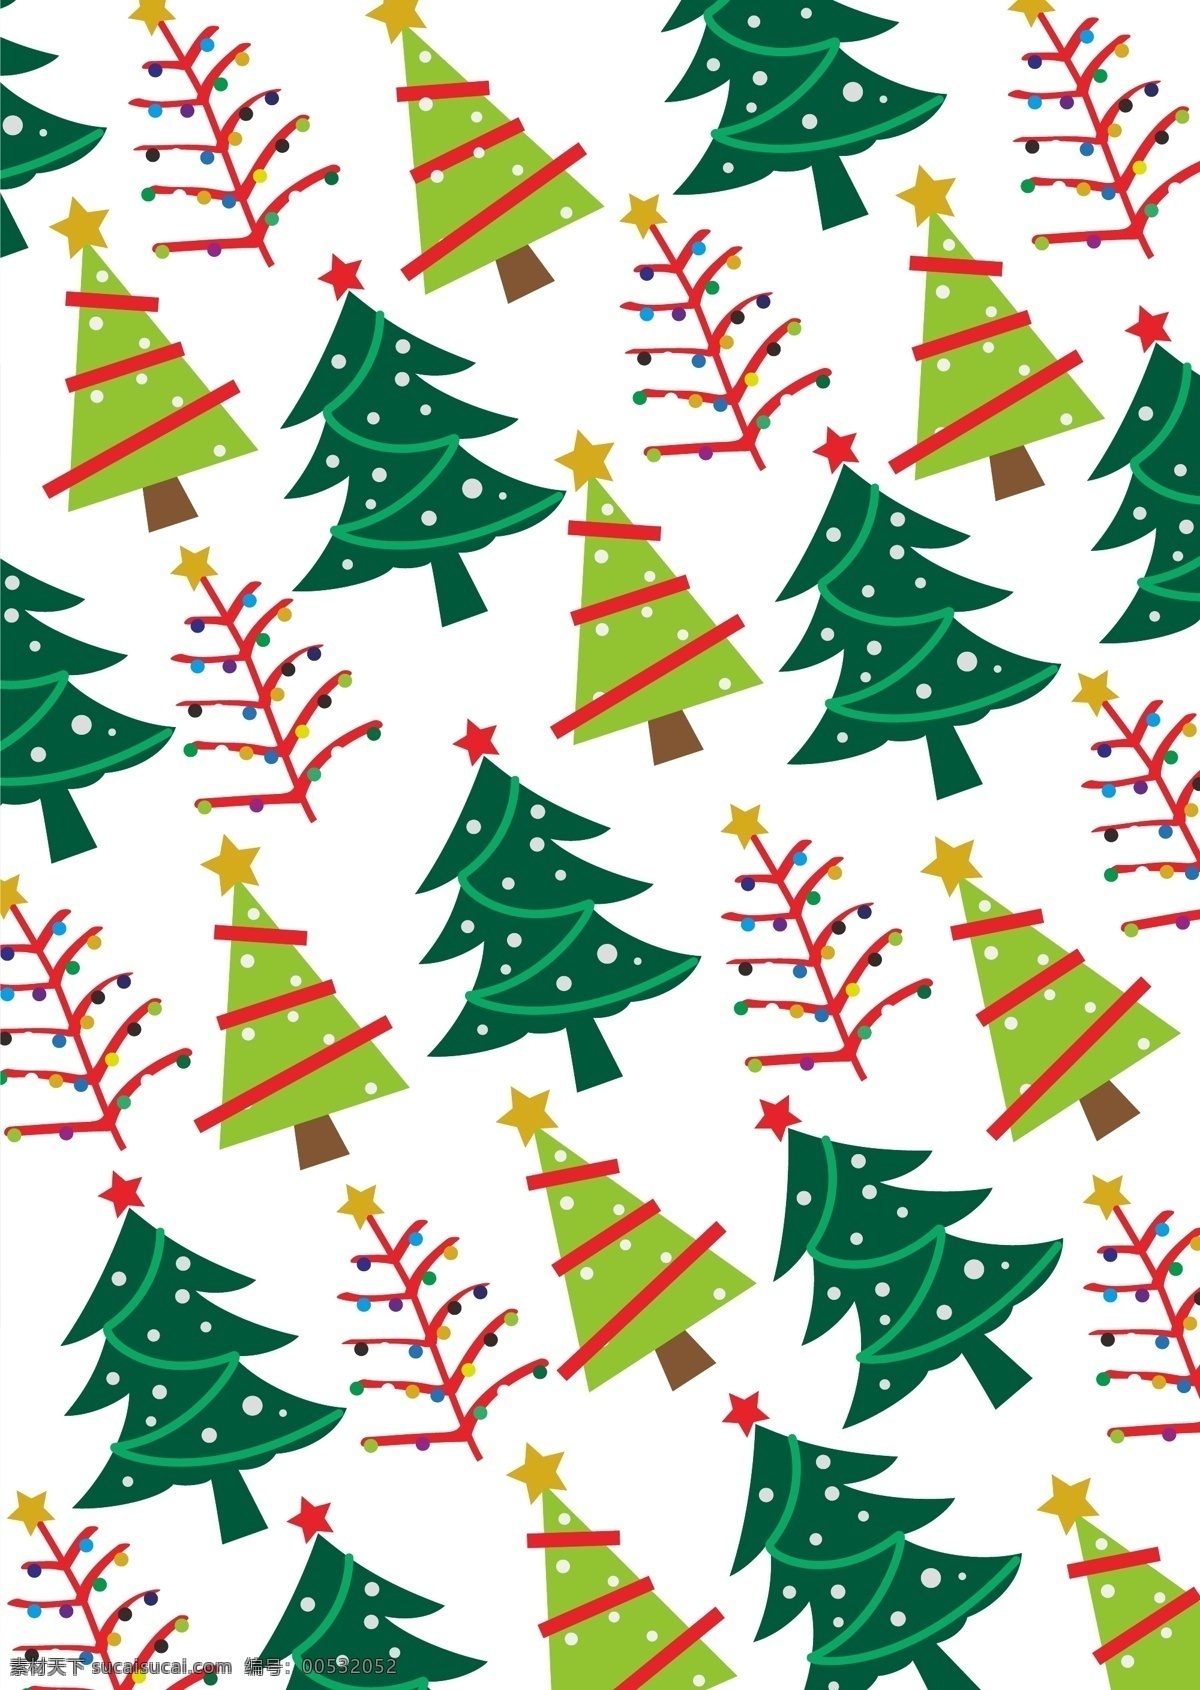 节日素材 礼物 圣诞 圣诞节 圣诞礼物 圣诞树 矢量 模板下载 适量圣诞树 适量圣诞礼物 其他节日